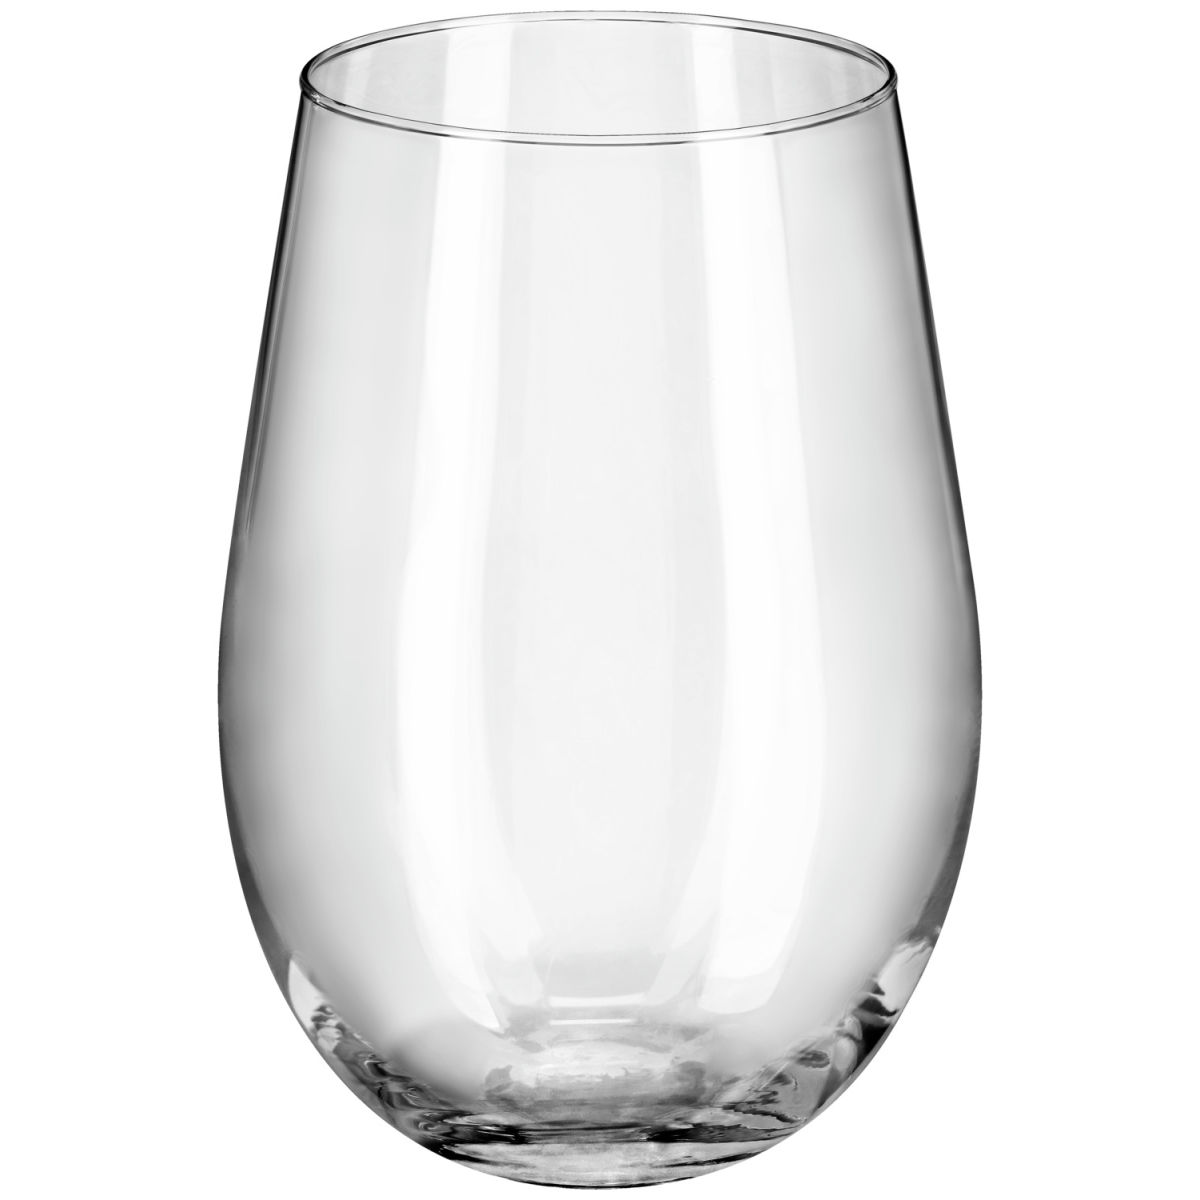 Krosno Rode wijnglas Harmony zonder steel; 580ml, 8.7x13.6 cm (ØxH); transparant; 6 stuk / verpakking